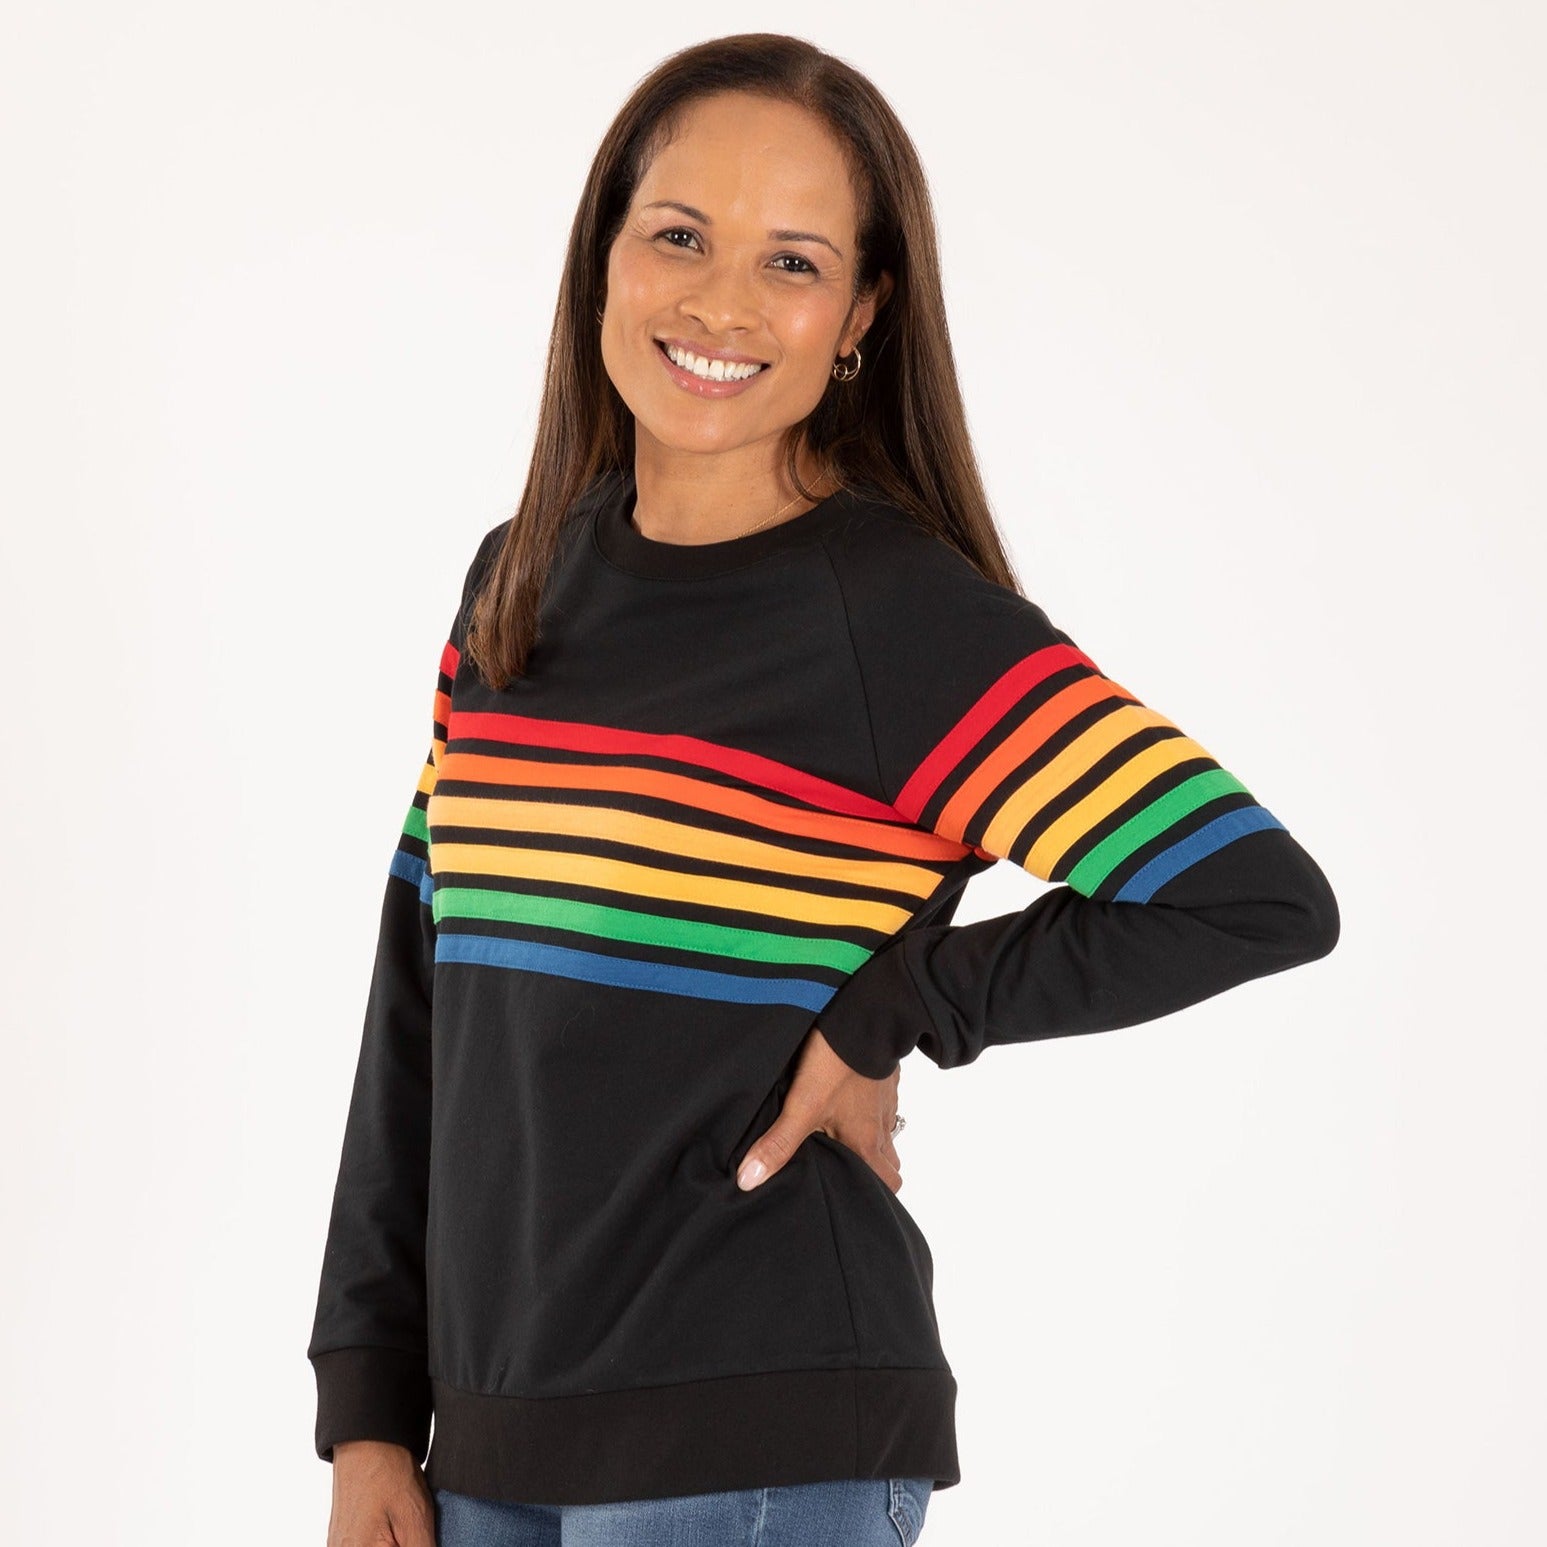 Retro Rainbow Stripe Crew Sweatshirt - S